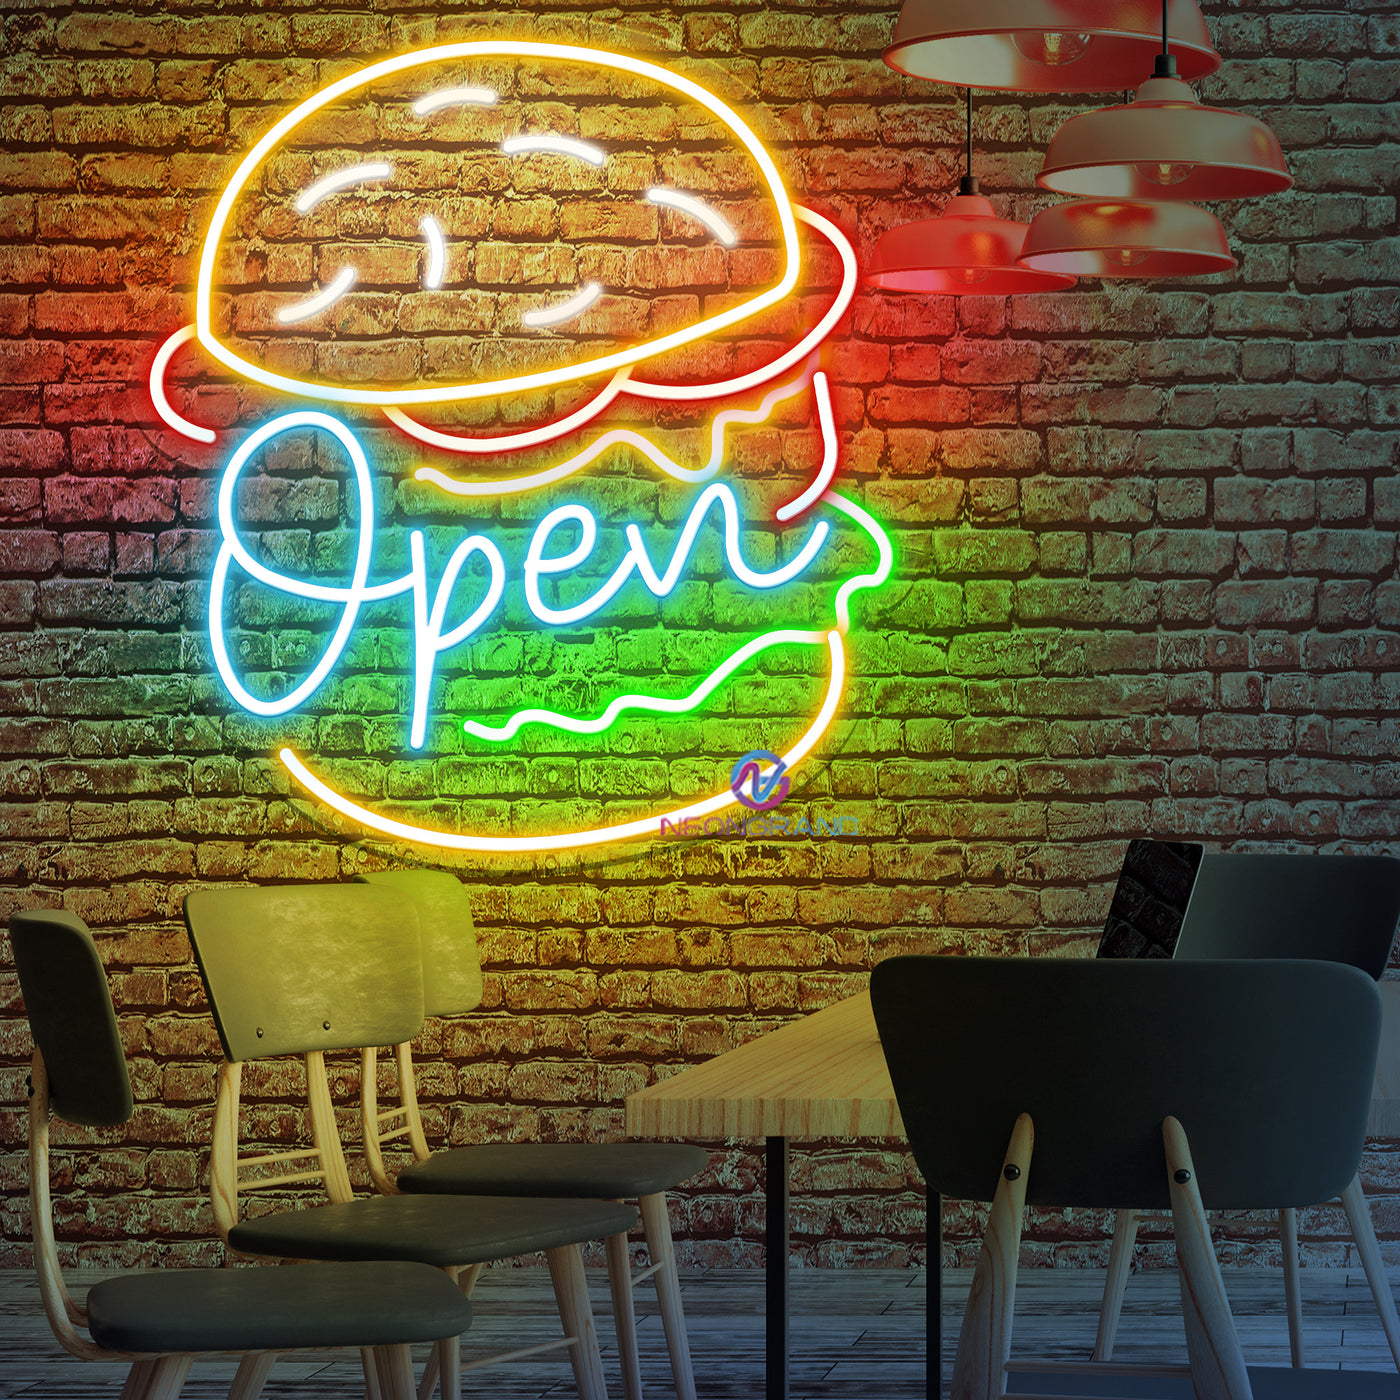 Burger Open Neon Sign Restaurant Led Light